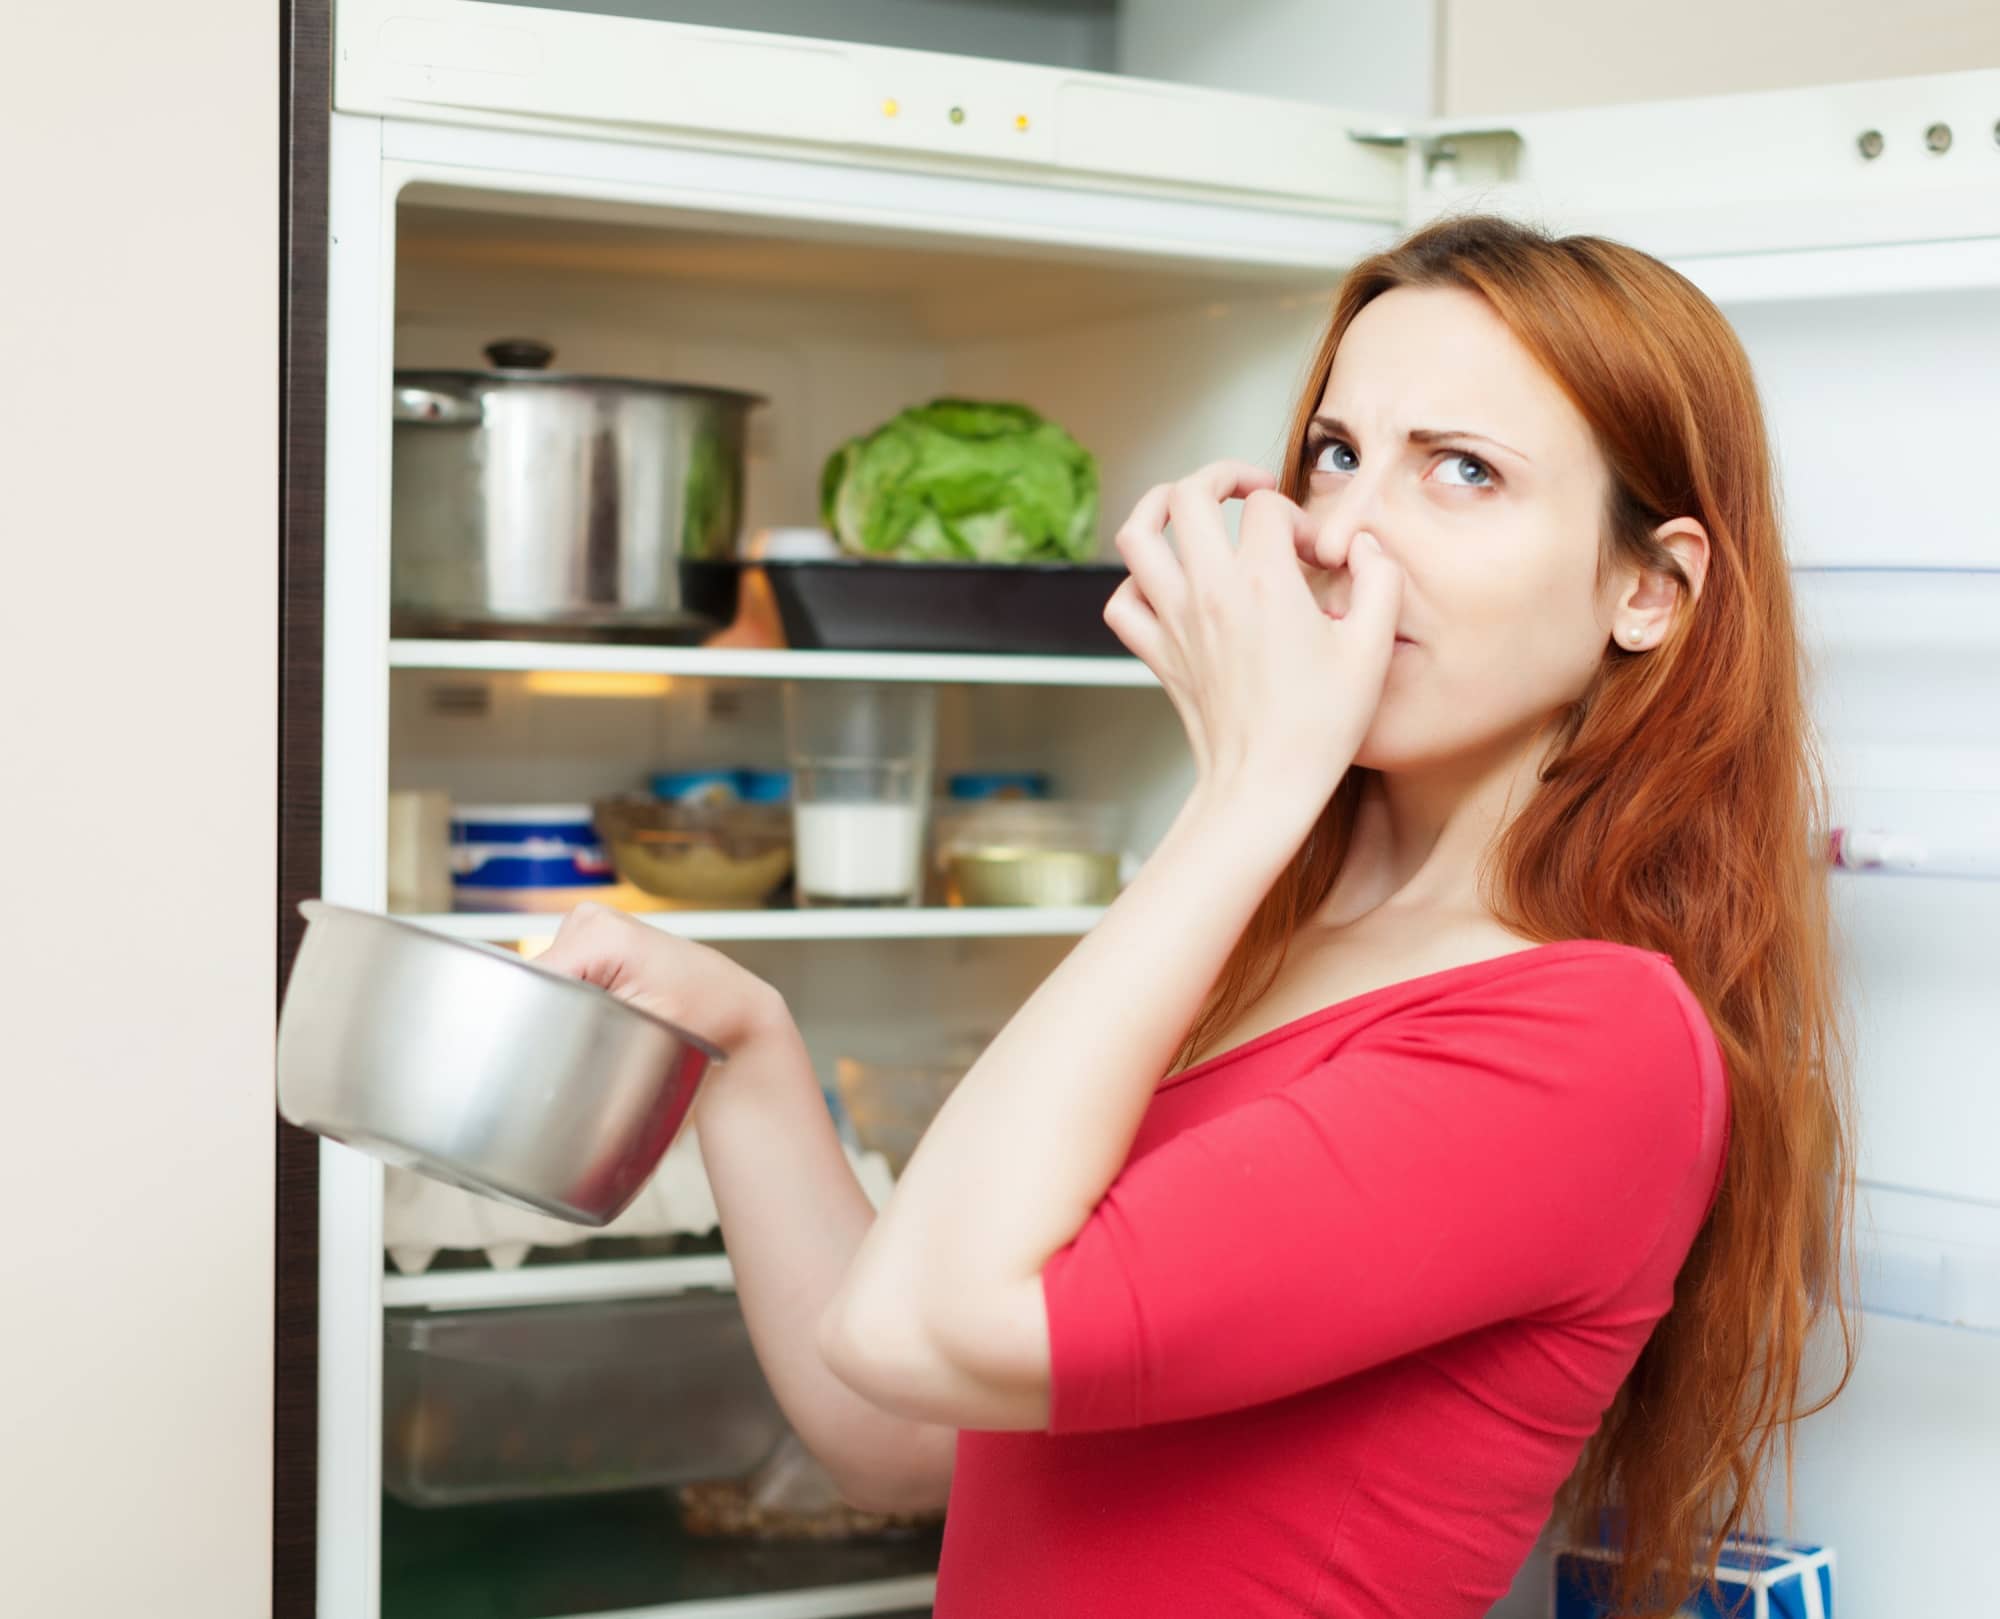 Неприятный запах мыла. Испорченная еда. Неприятный запах в холодильнике. Испорченные продукты в холодильнике. Неприятный запах из холодильника.